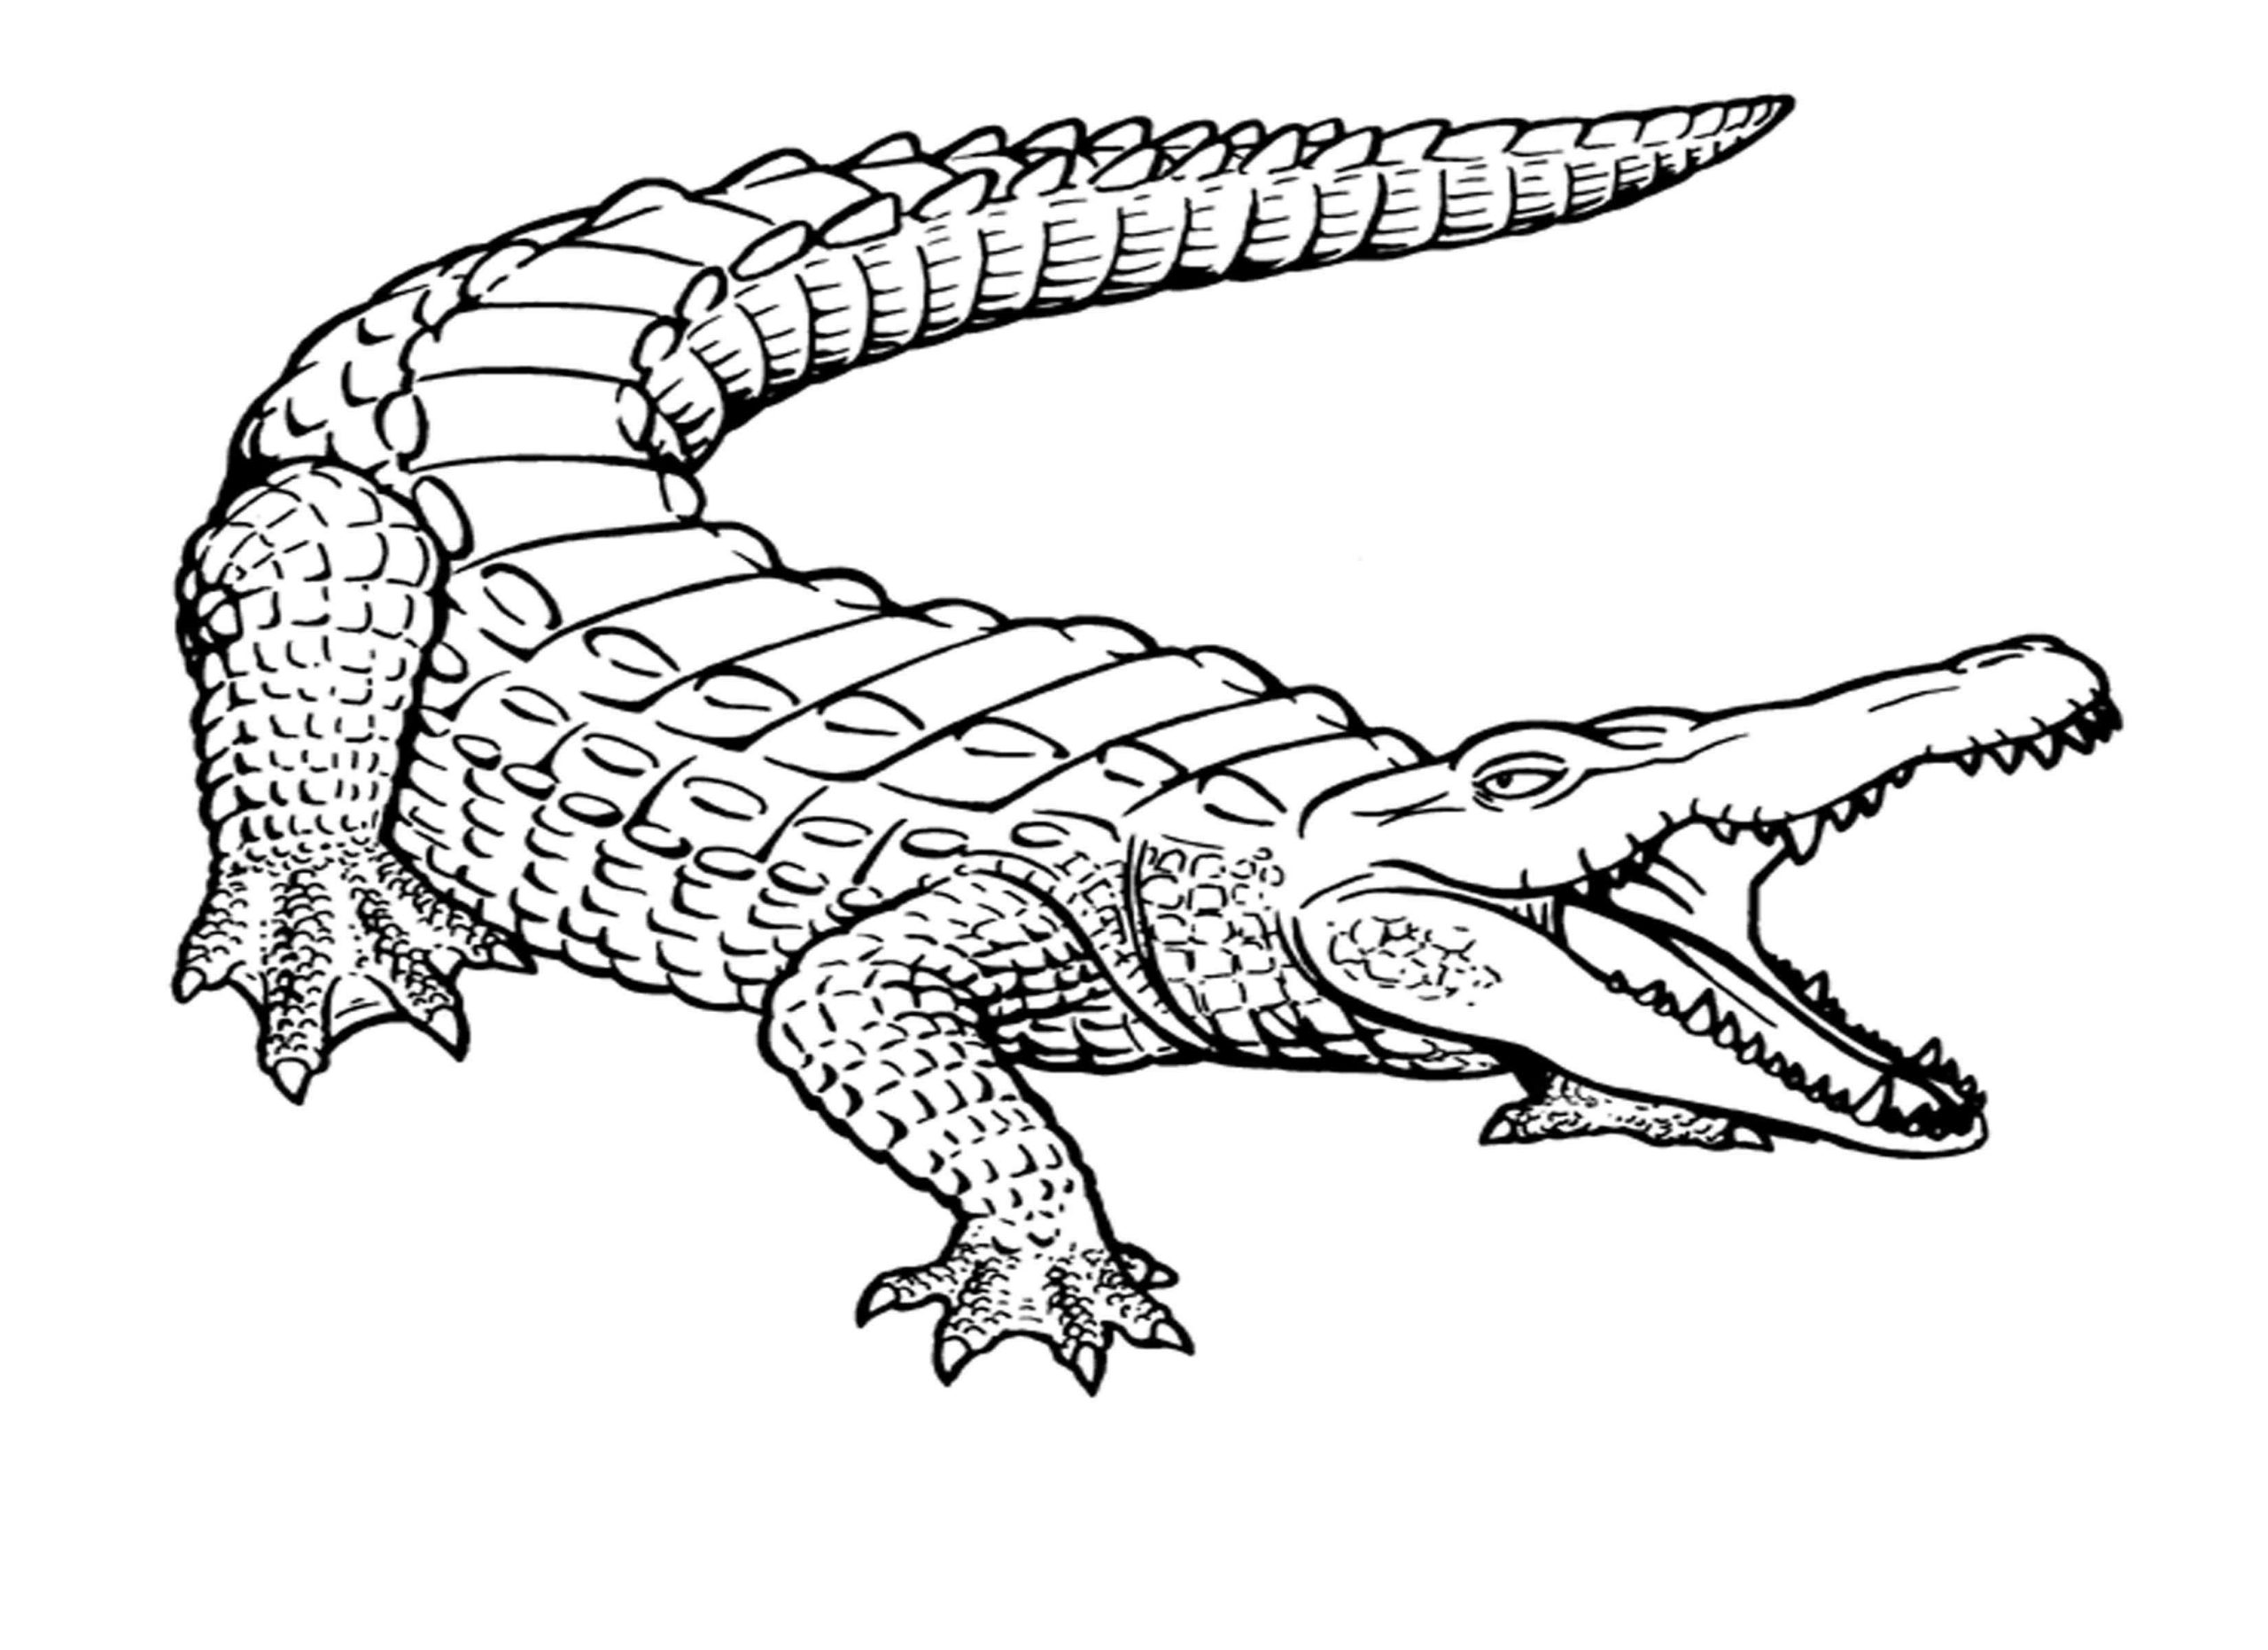 Big Crocodile Coloring Page